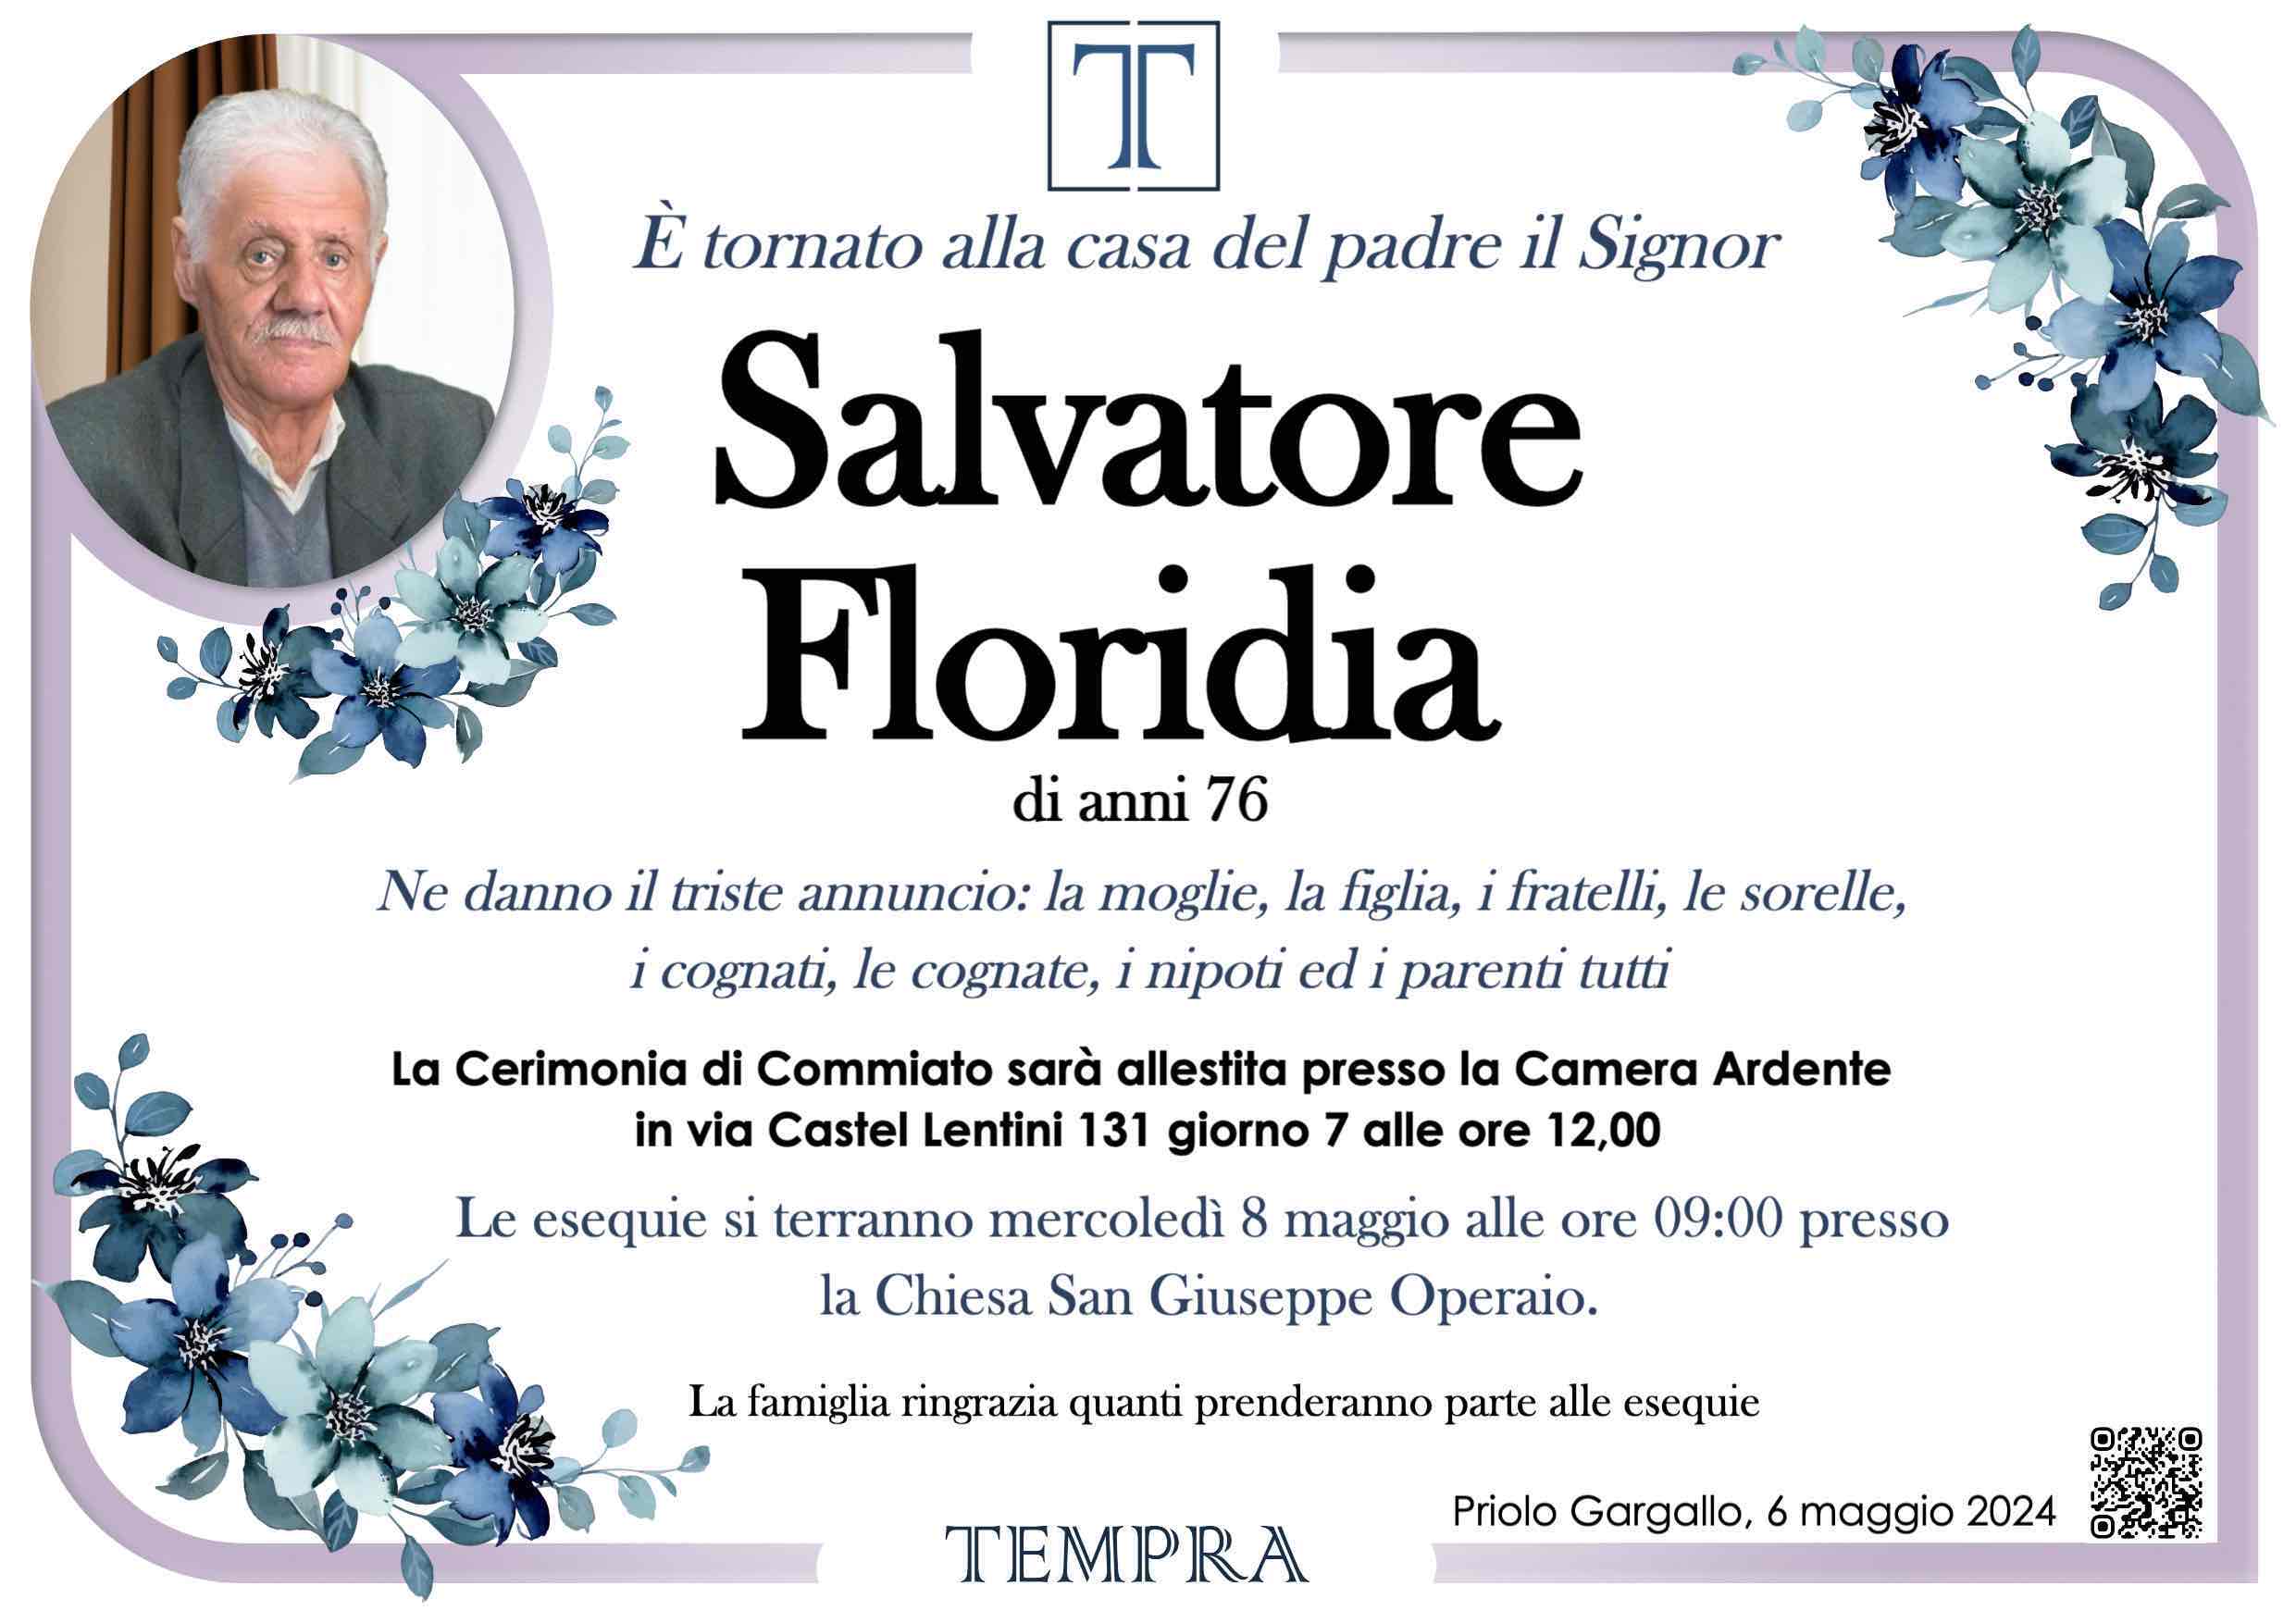 Salvatore Floridia